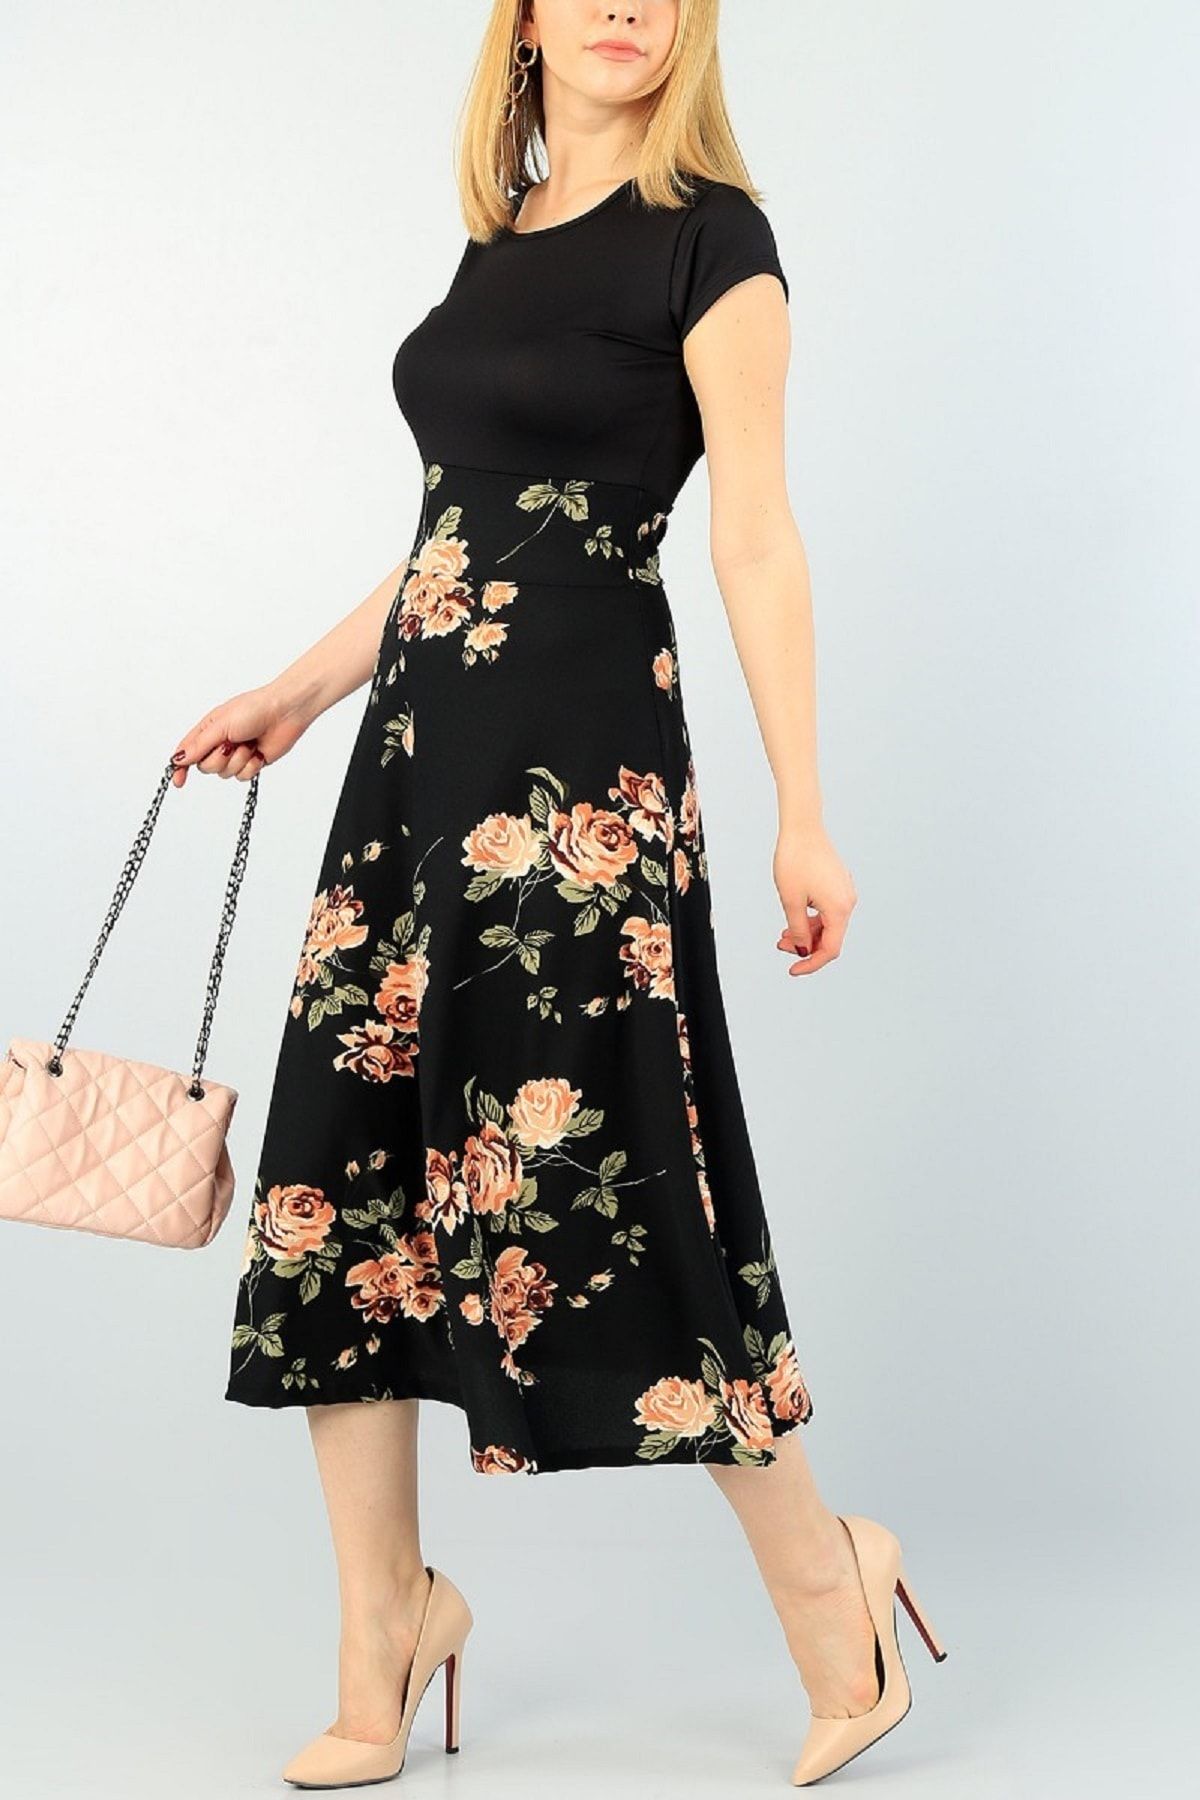 Genel Markalar Kadın Siyah Büyük Beden Tek Parça Krep Kumaş Eteği Gül Desenli Elbise Boy 120cm